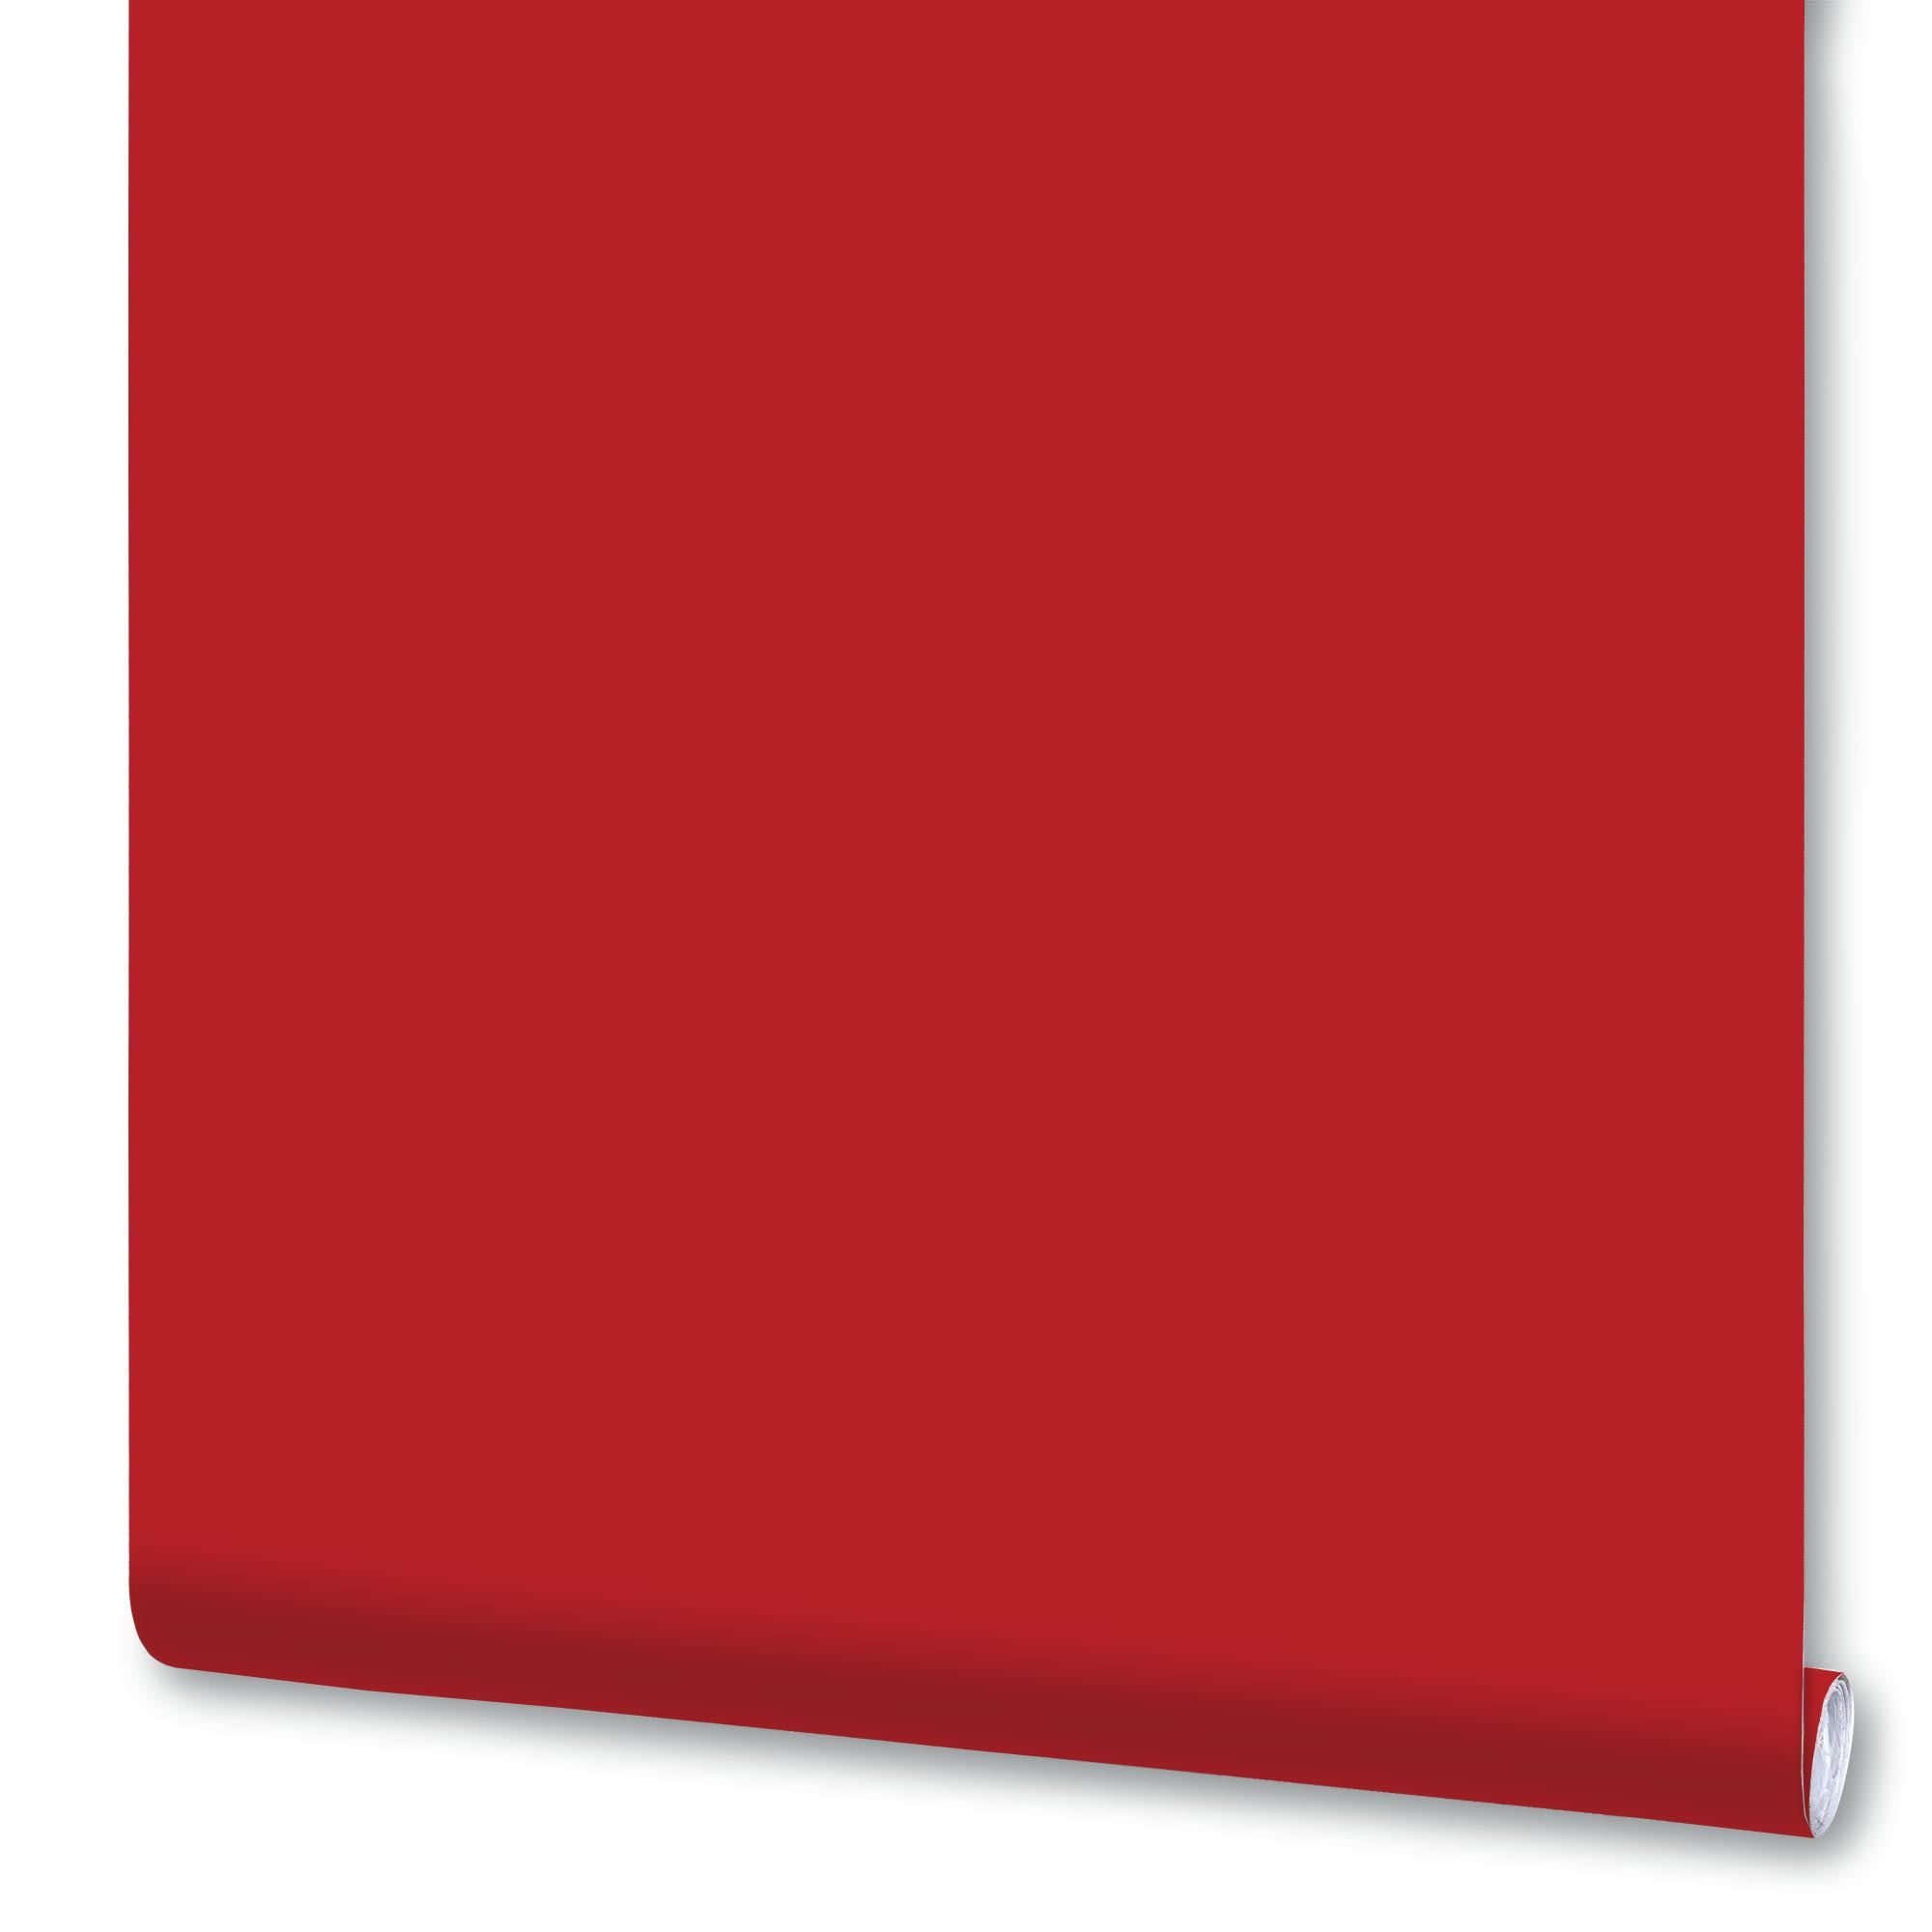 Плёнка Deluxe самоклеящаяся, 0,45x2 м, рубиново-красная, глянцевая, 7011В, 1 рулон плёнка deluxe самоклеящаяся 0 45x2 м рубиново красная глянцевая 7011в 1 рулон